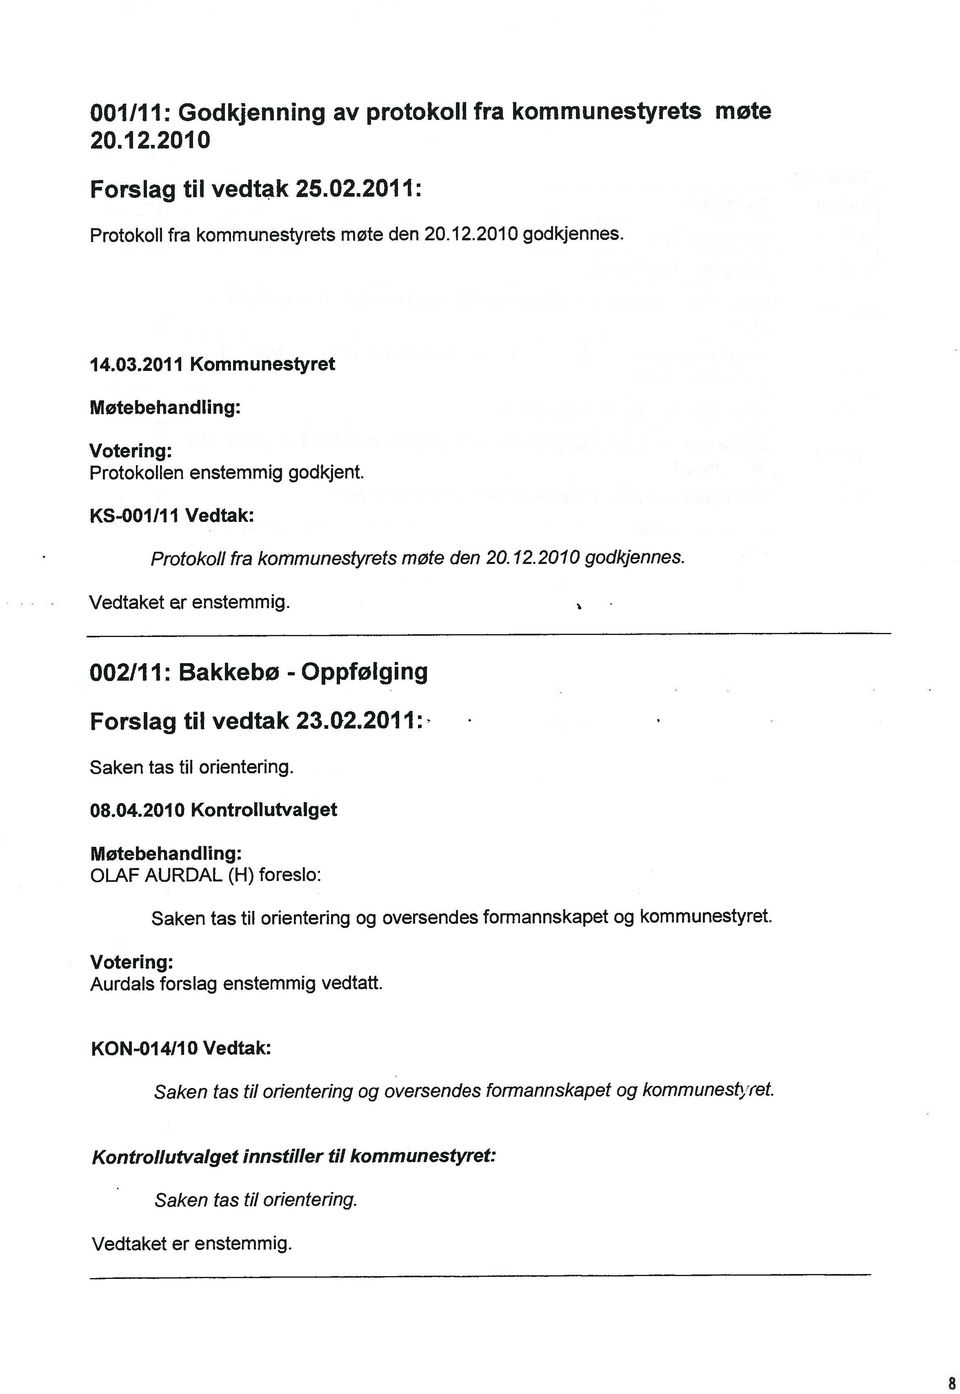 002/11: Bakkebø - Oppfølging Forslag til vedtak 23.02.2011: Saken tas til orientering. 08.04.